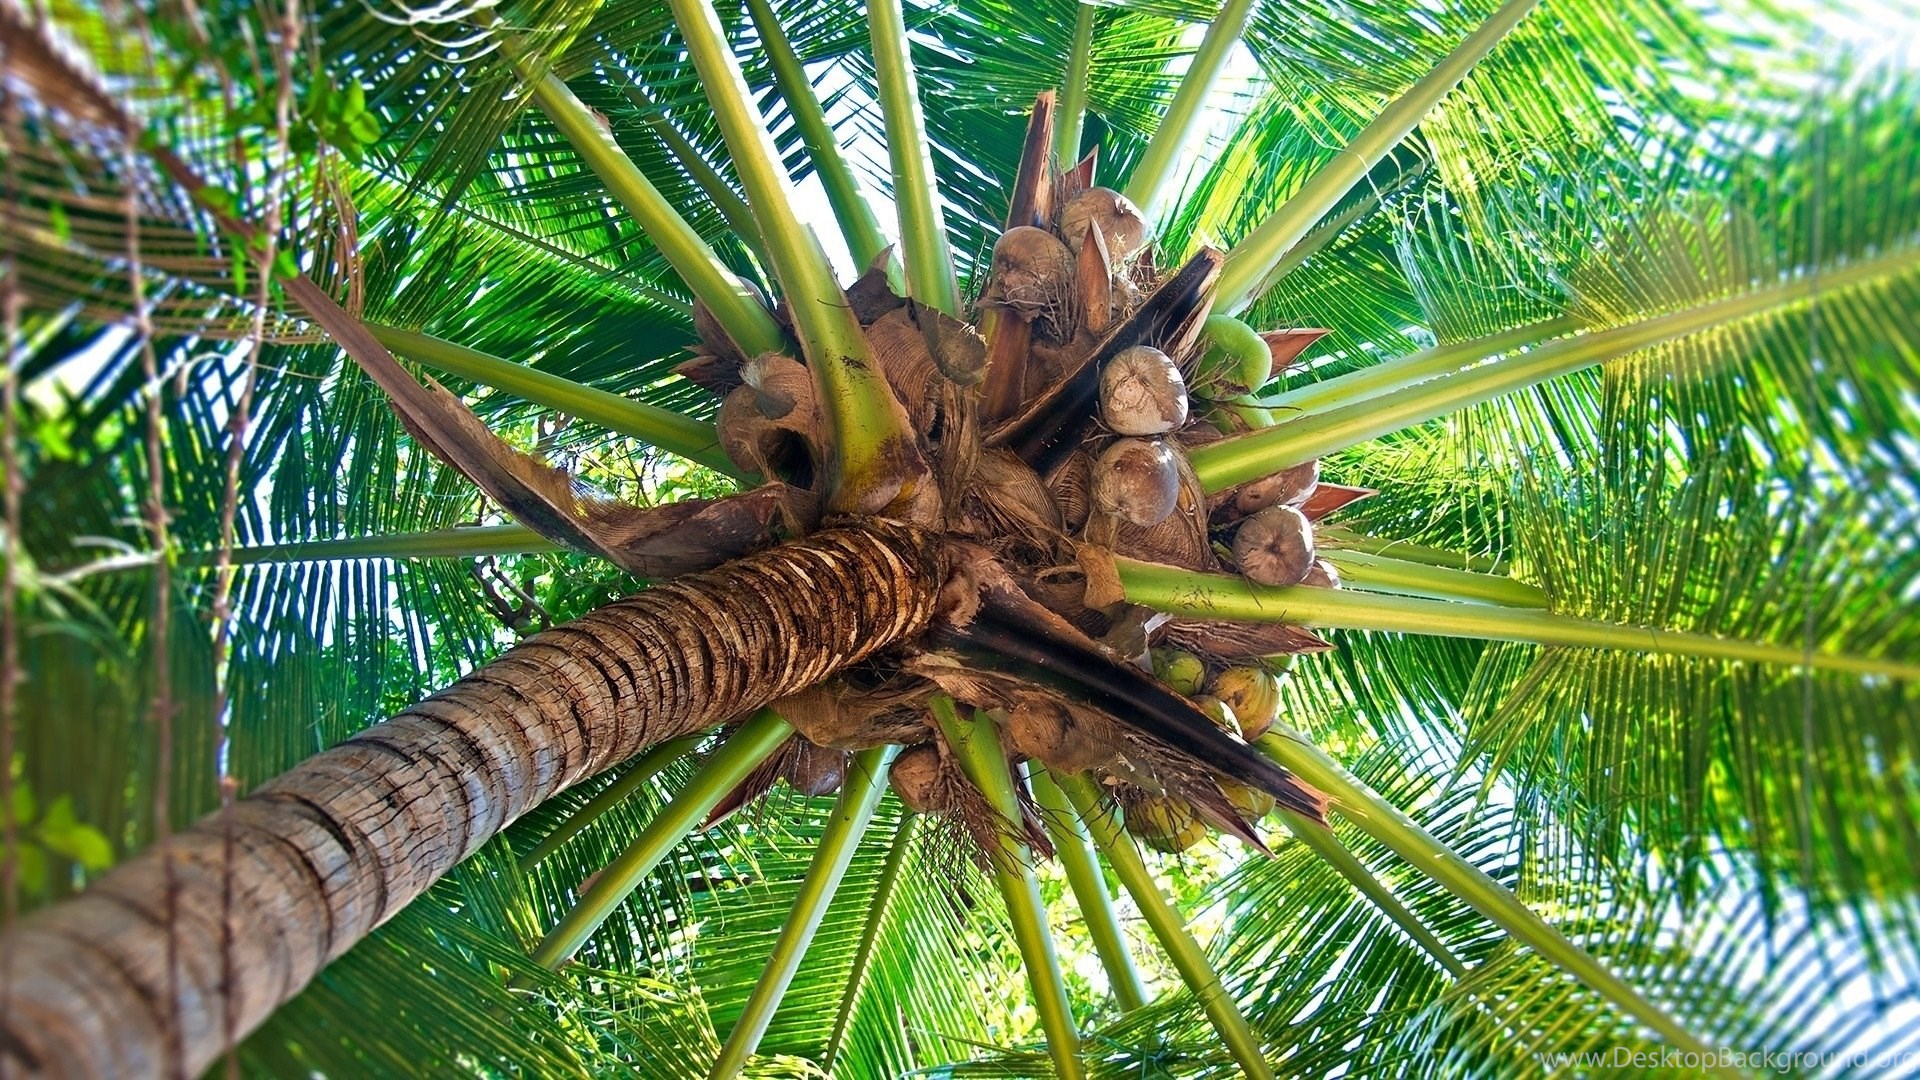 albero di cocco wallpaper hd,albero,palma,pianta,palma del deserto,borassus flabellifer